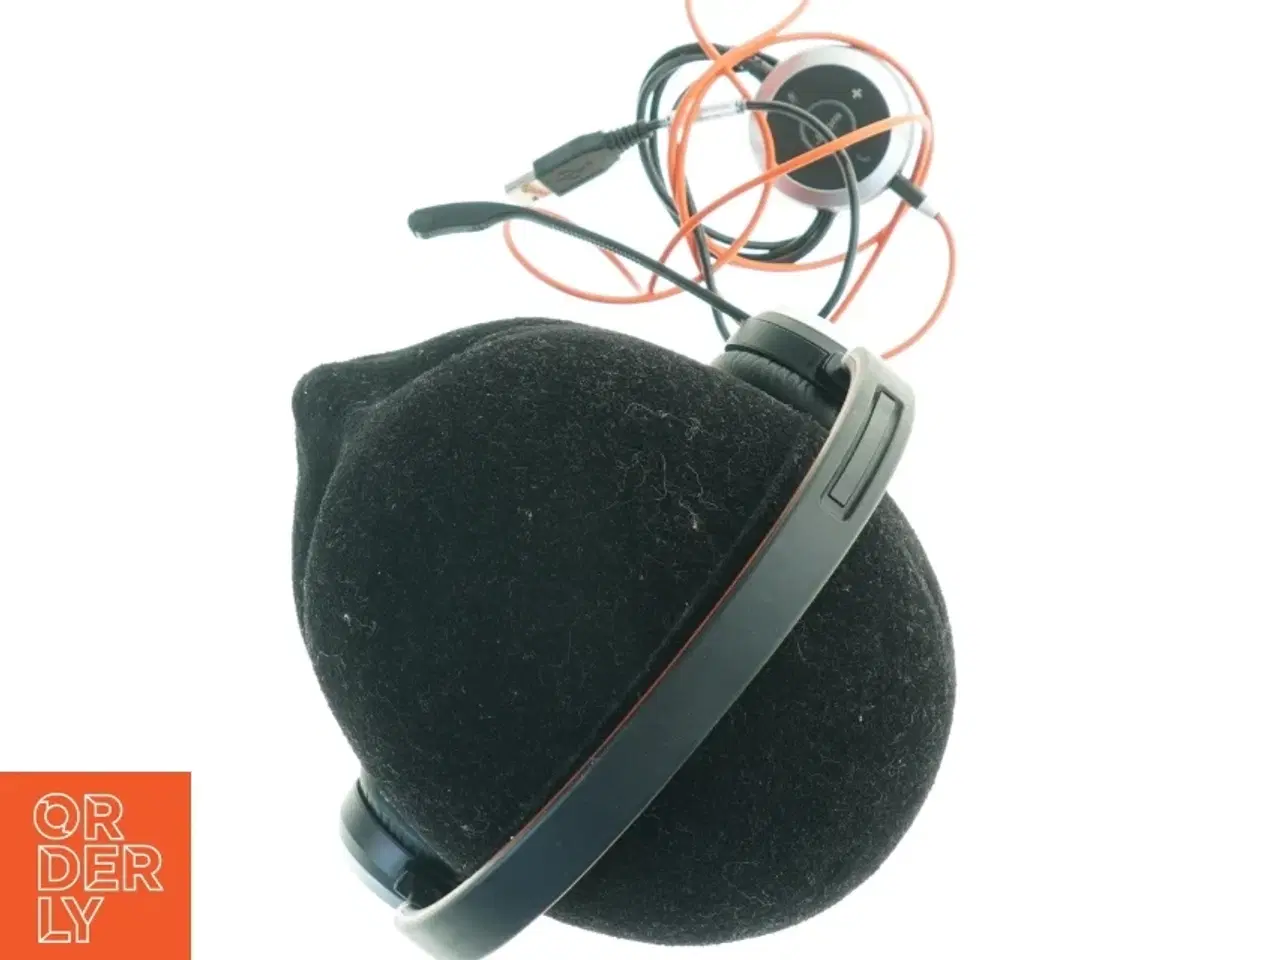 Billede 3 - Jabra headset med mikrofon fra Jabra (str. 17 x, 18 cm)